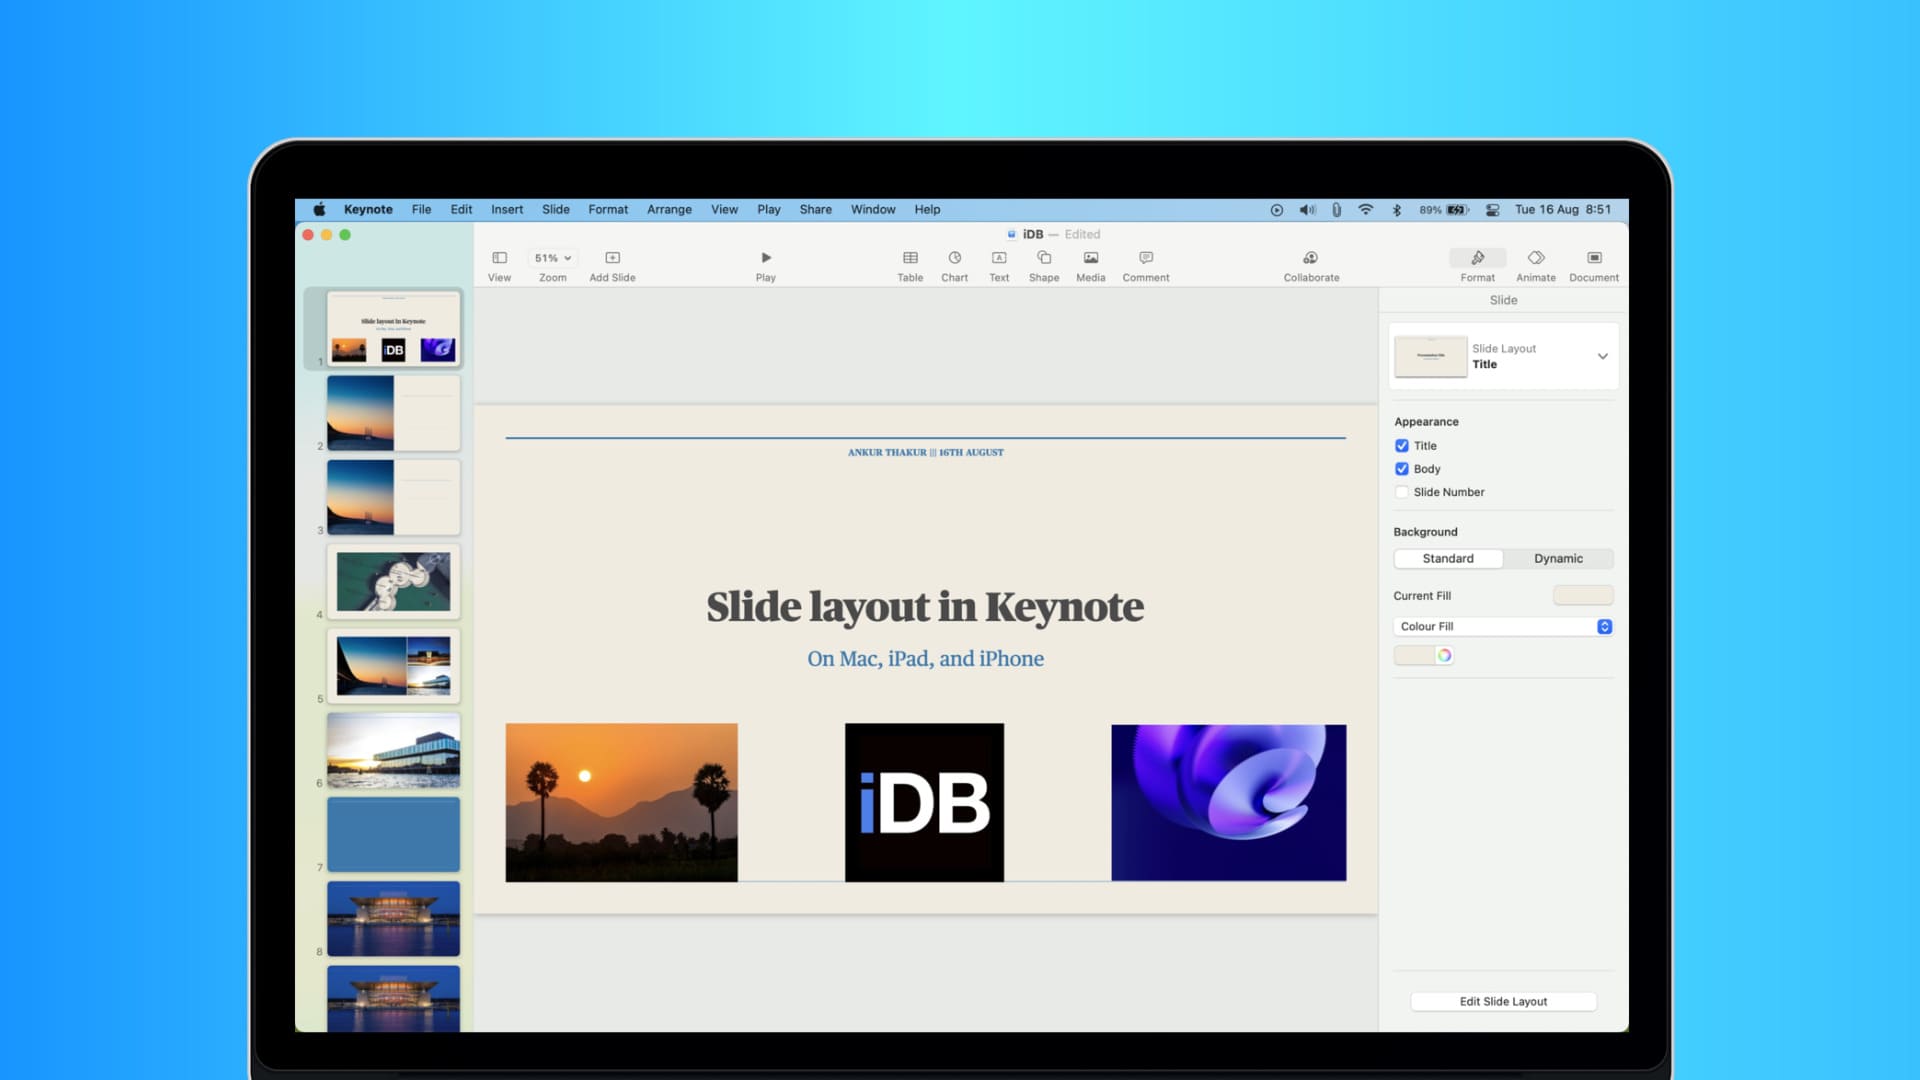 Change slide layout in the Keynote app